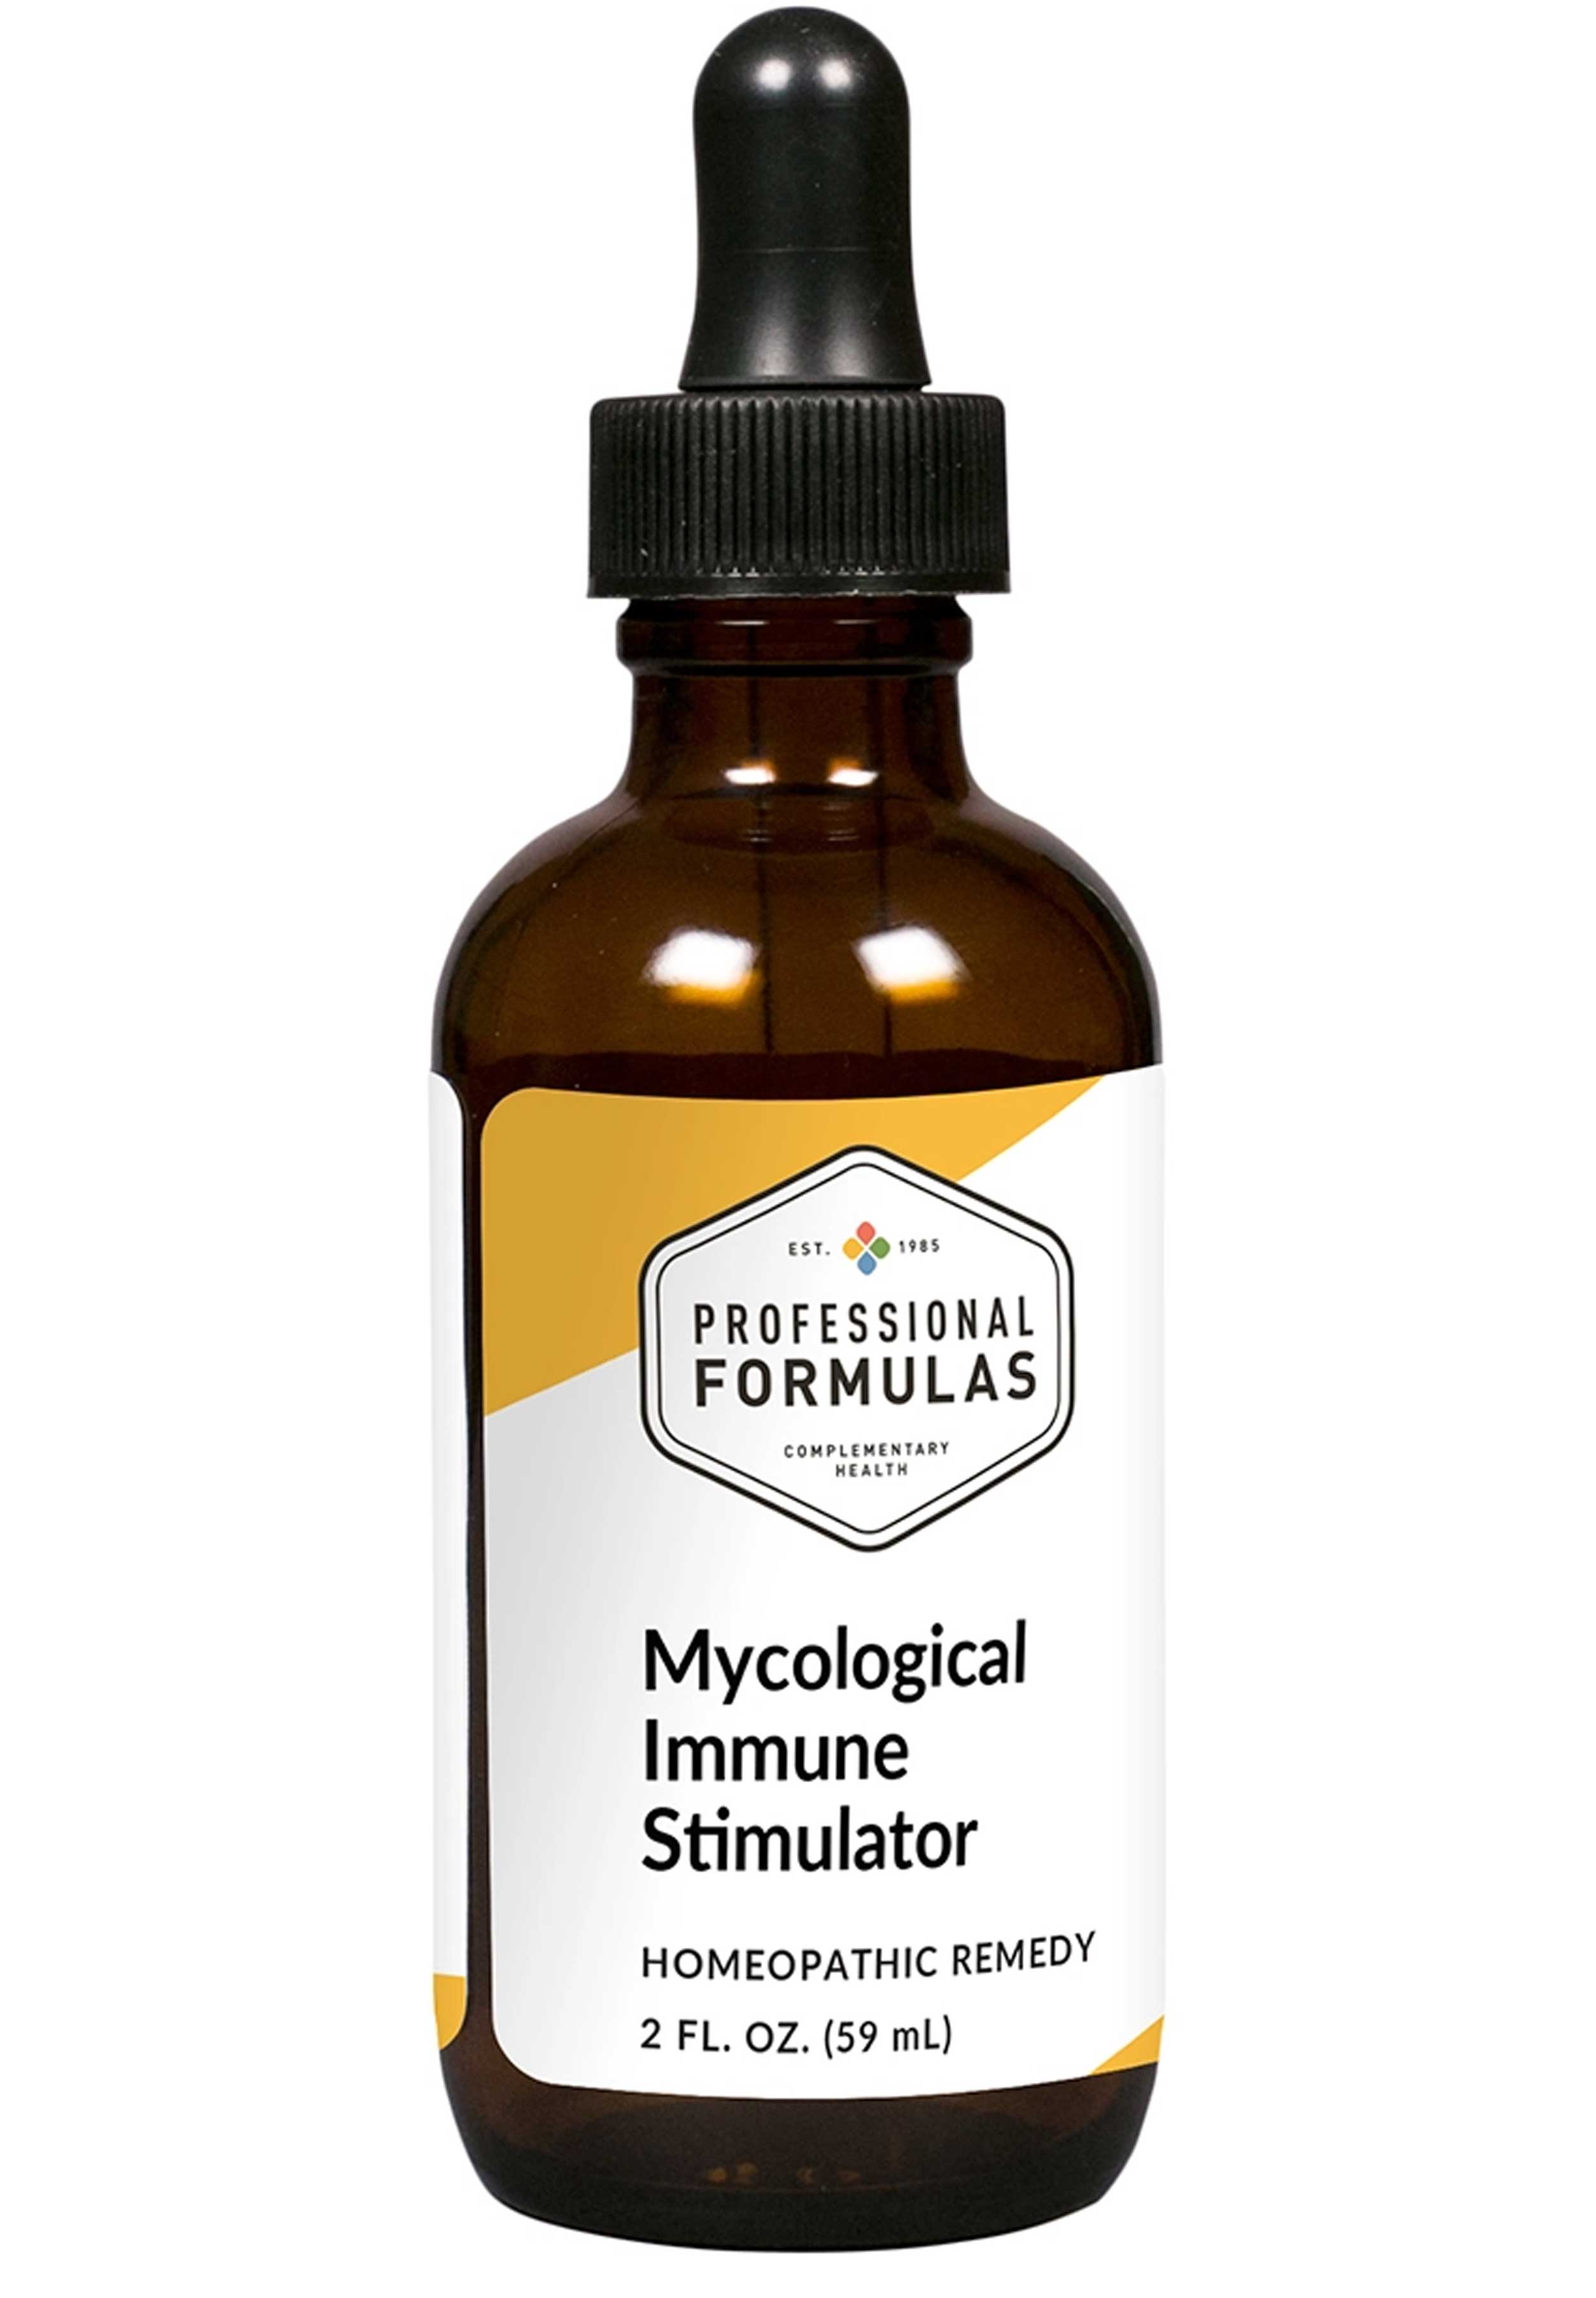 Professional Formulas Mycological Immune Stimulator